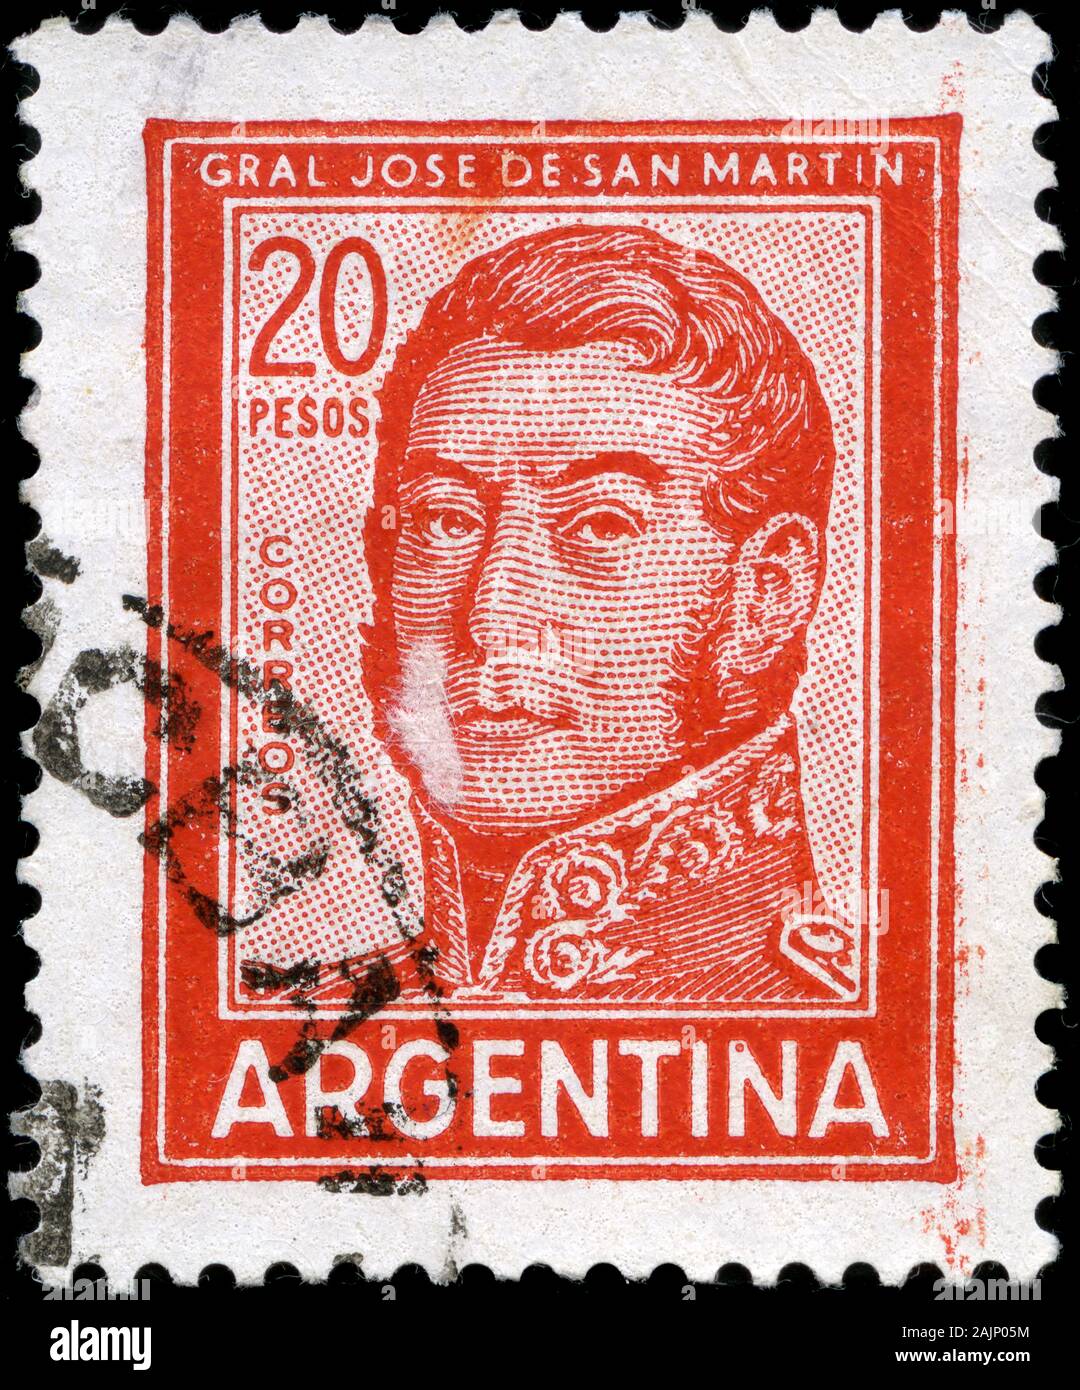 José Francisco de San Martín (1778-1850) Stockfoto